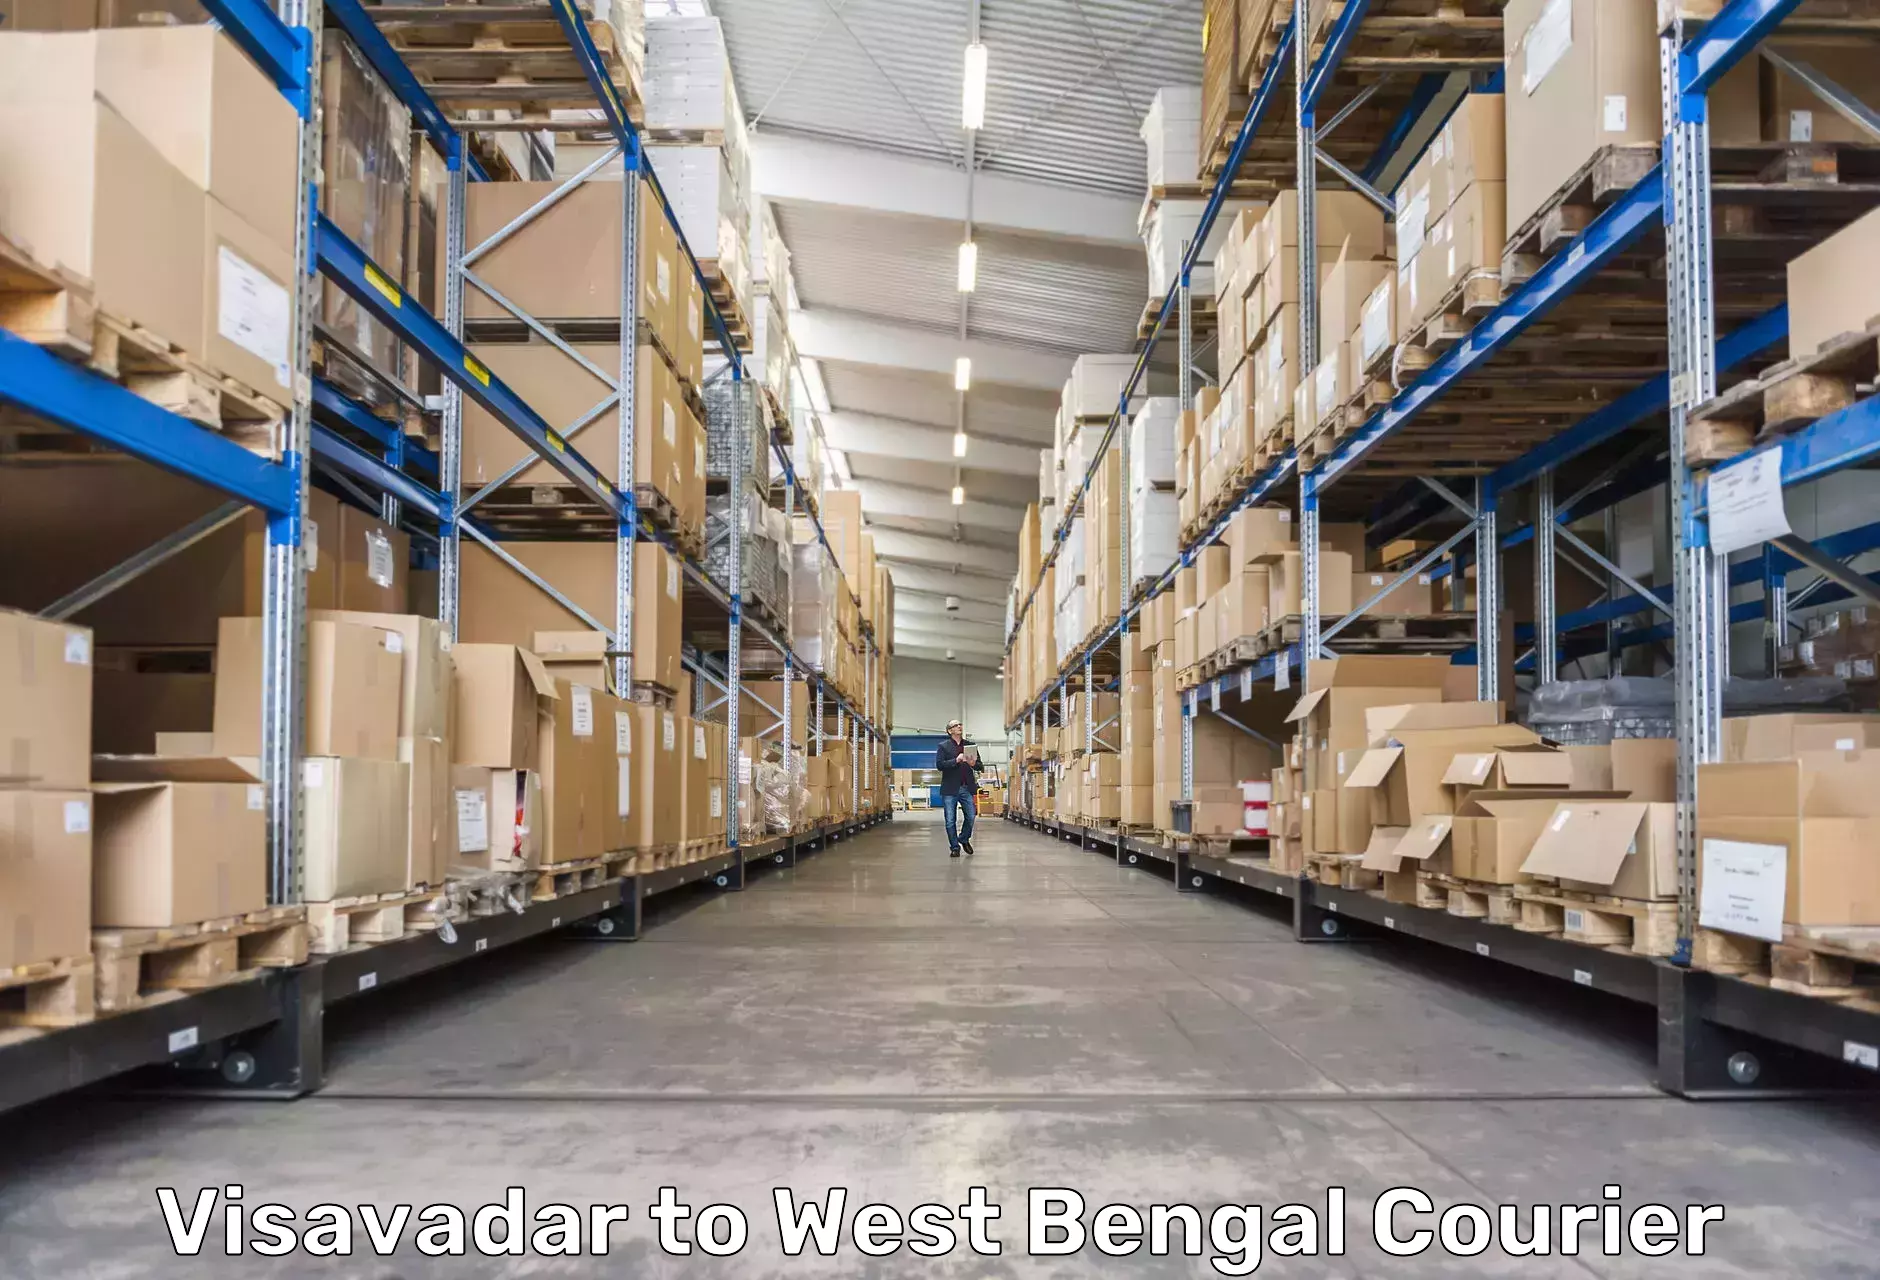 Holiday shipping services Visavadar to Kolkata Port